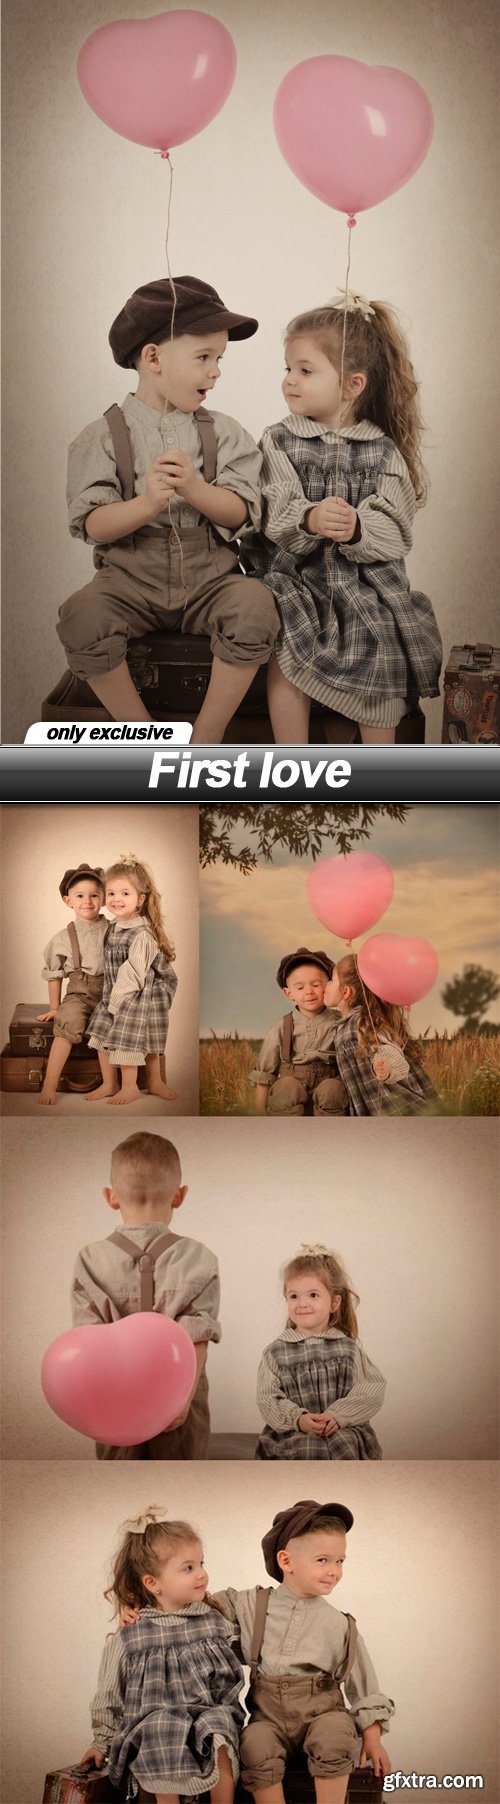 First love - 5 UHQ JPEG